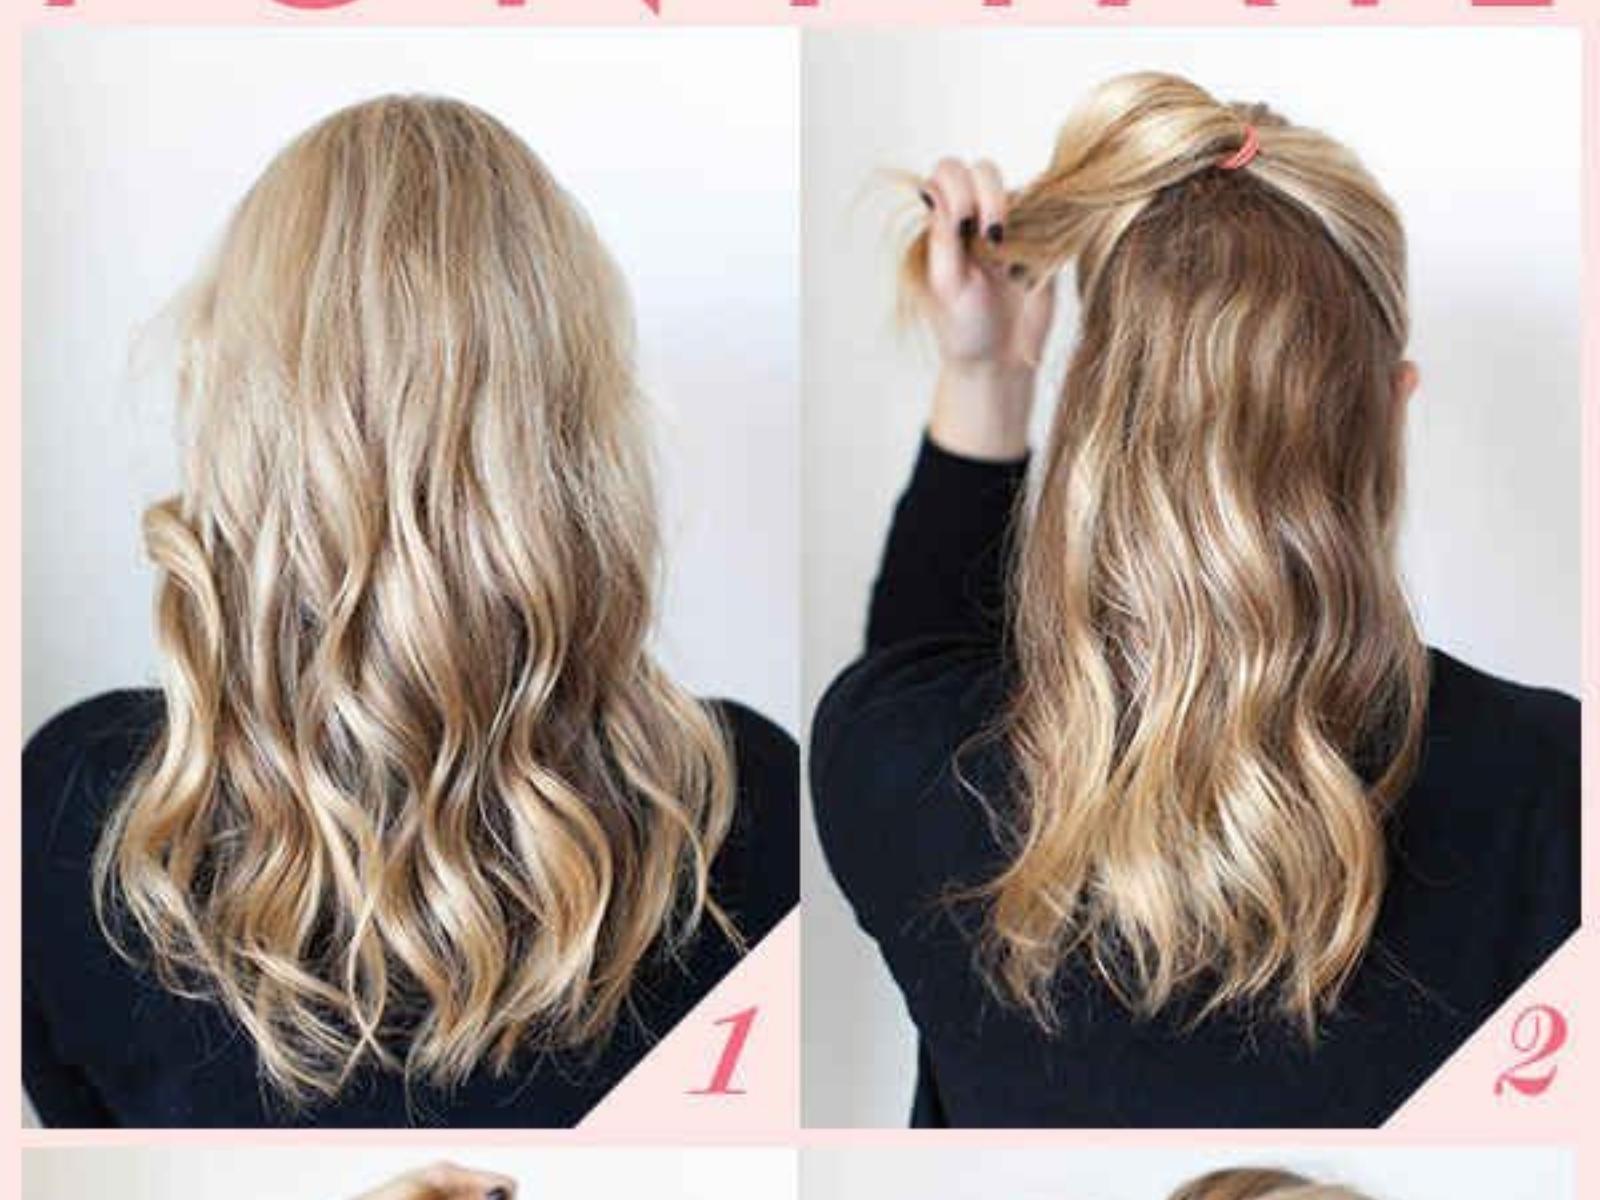 17 συμβουλές και κόλπα για τα μαλλιά σου που θα σου κάνουν τη ζωή πιο εύκολη